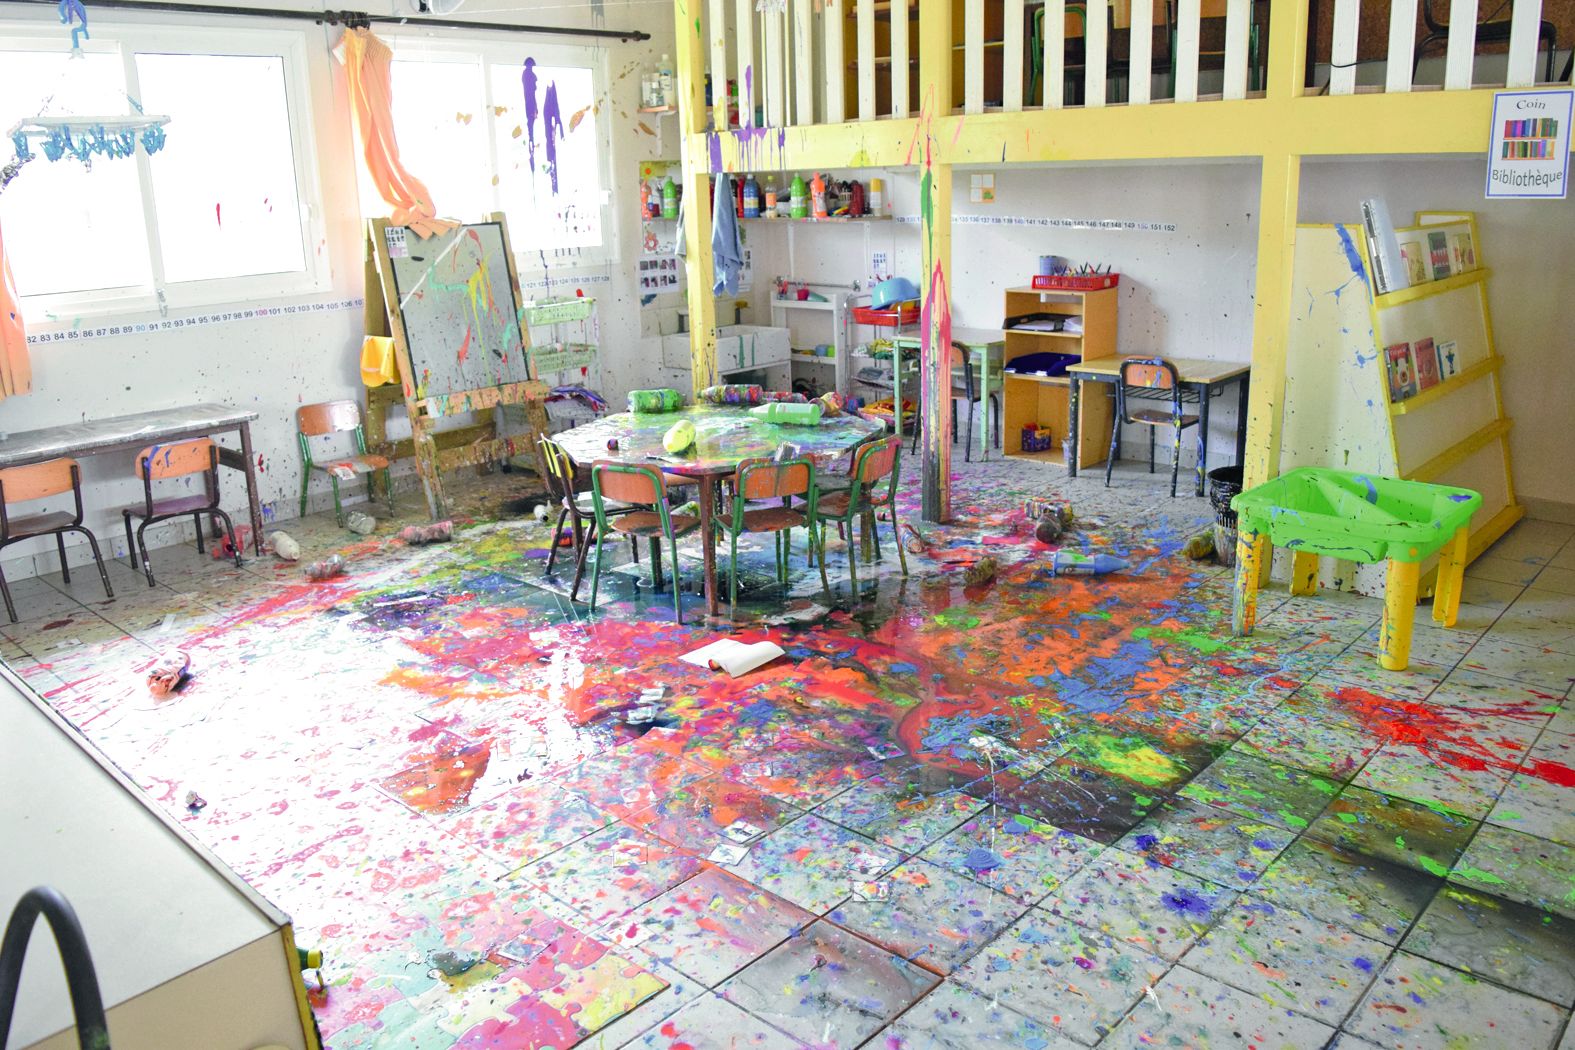 Cette classe de maternelle a été entièrement repeinte par les malfrats. Une entreprise de nettoyage est intervenue  vendredi après-midi. Mais les dessins, les cahiers des enfants, le petit matériel éducatif sont définitivement abîmés.